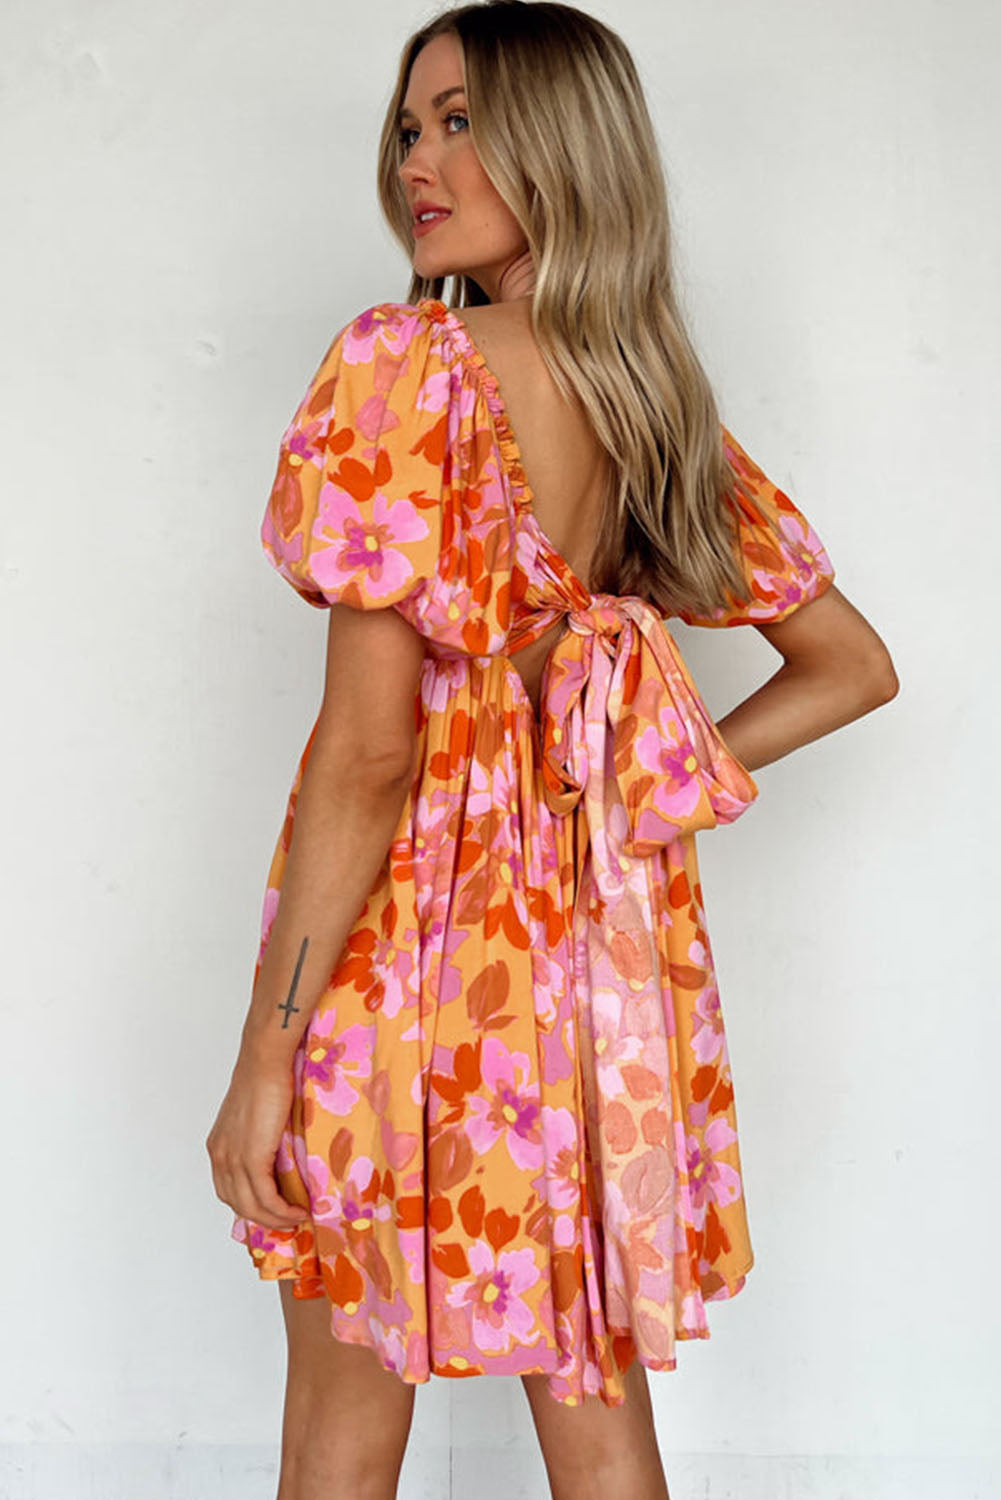 Riya - Super Stylisches Kleid in Sommerfarben